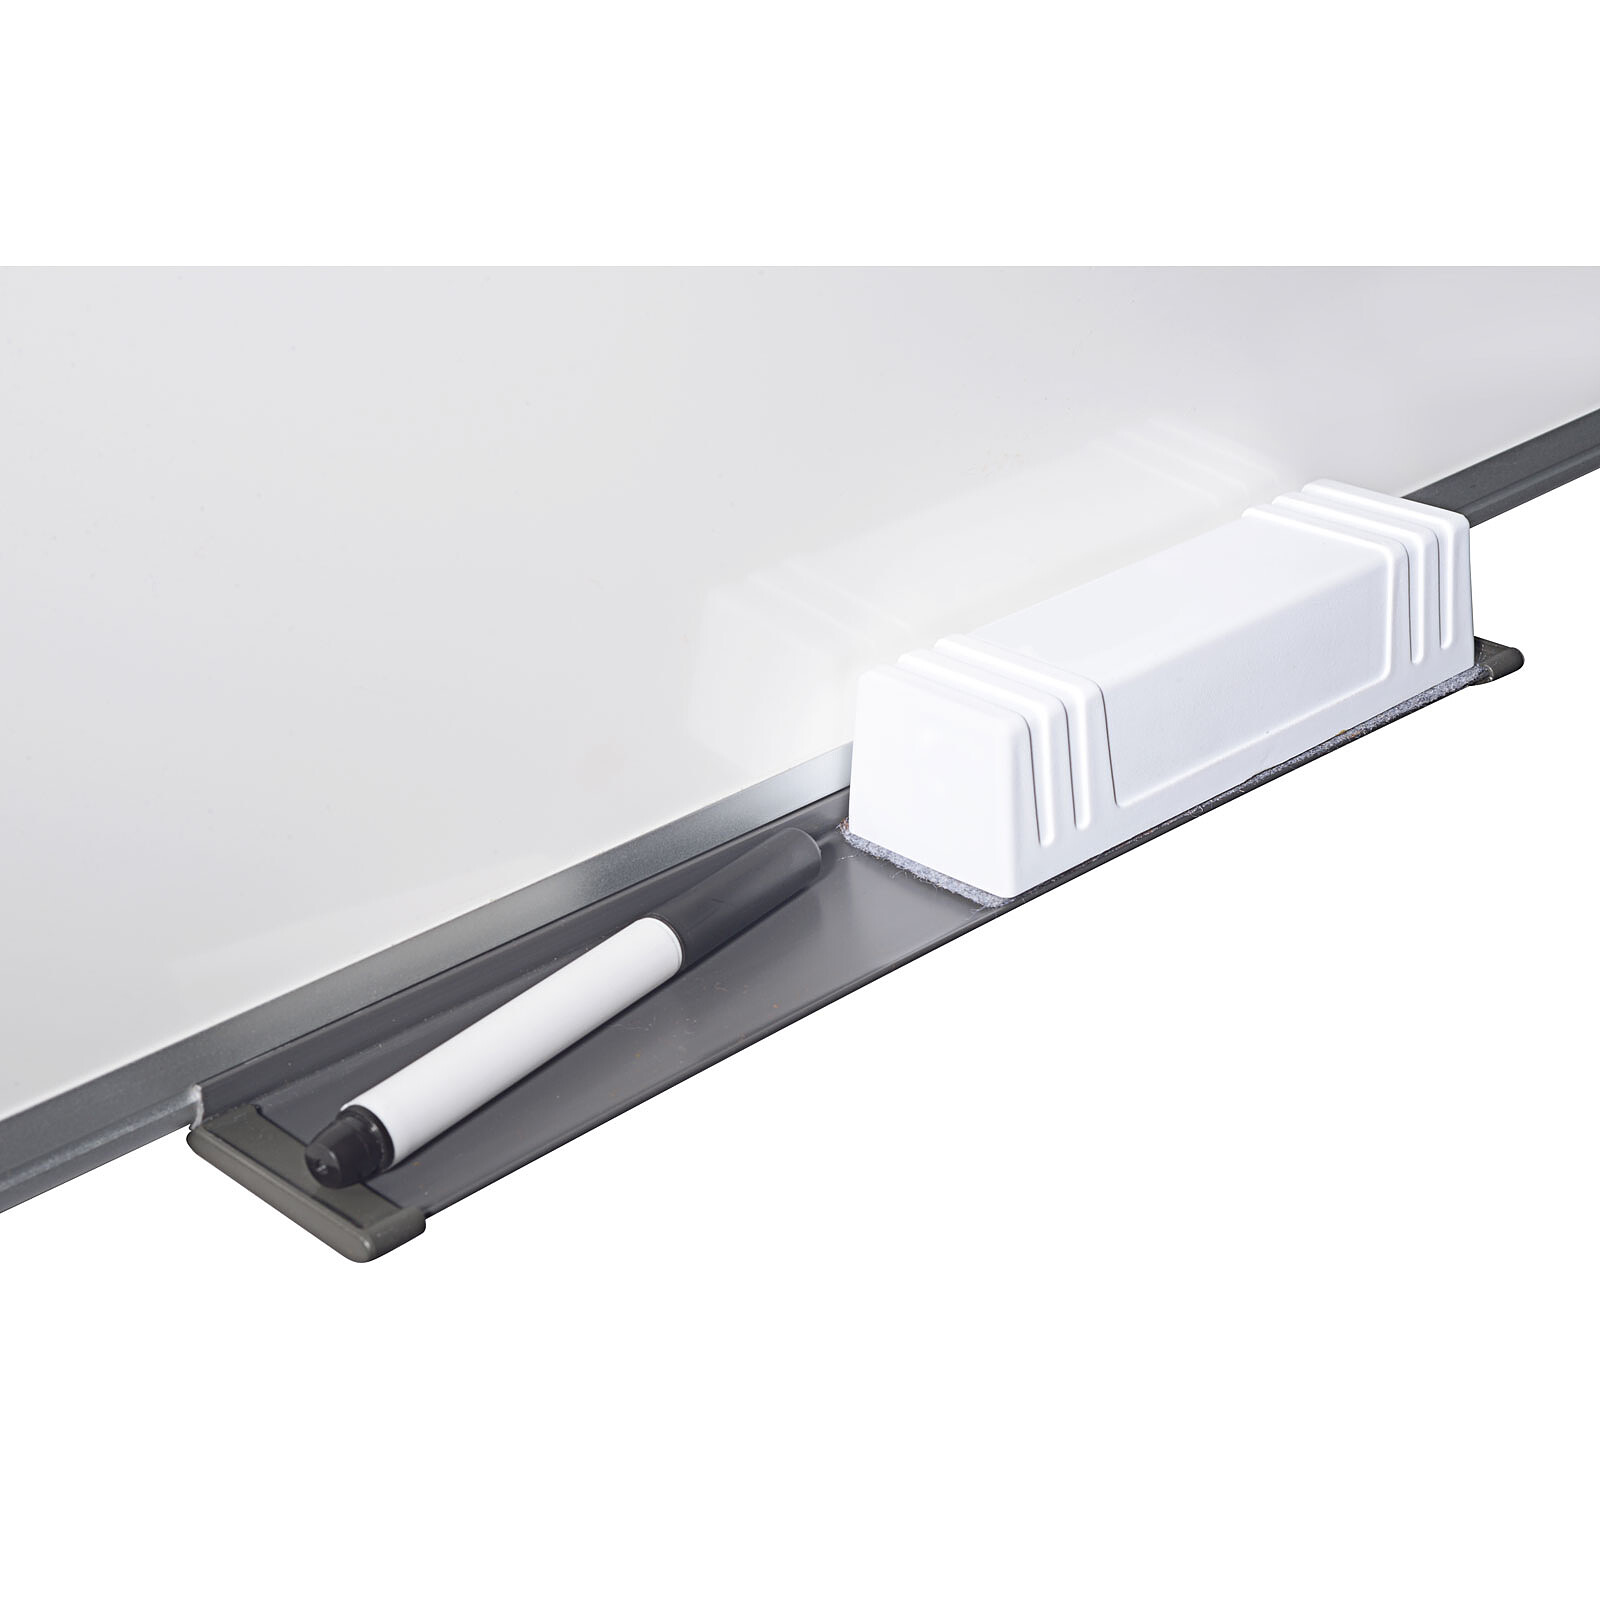 Tableau blanc - Magnétique - 1200 x 900 mm BI-OFFICE New Génération